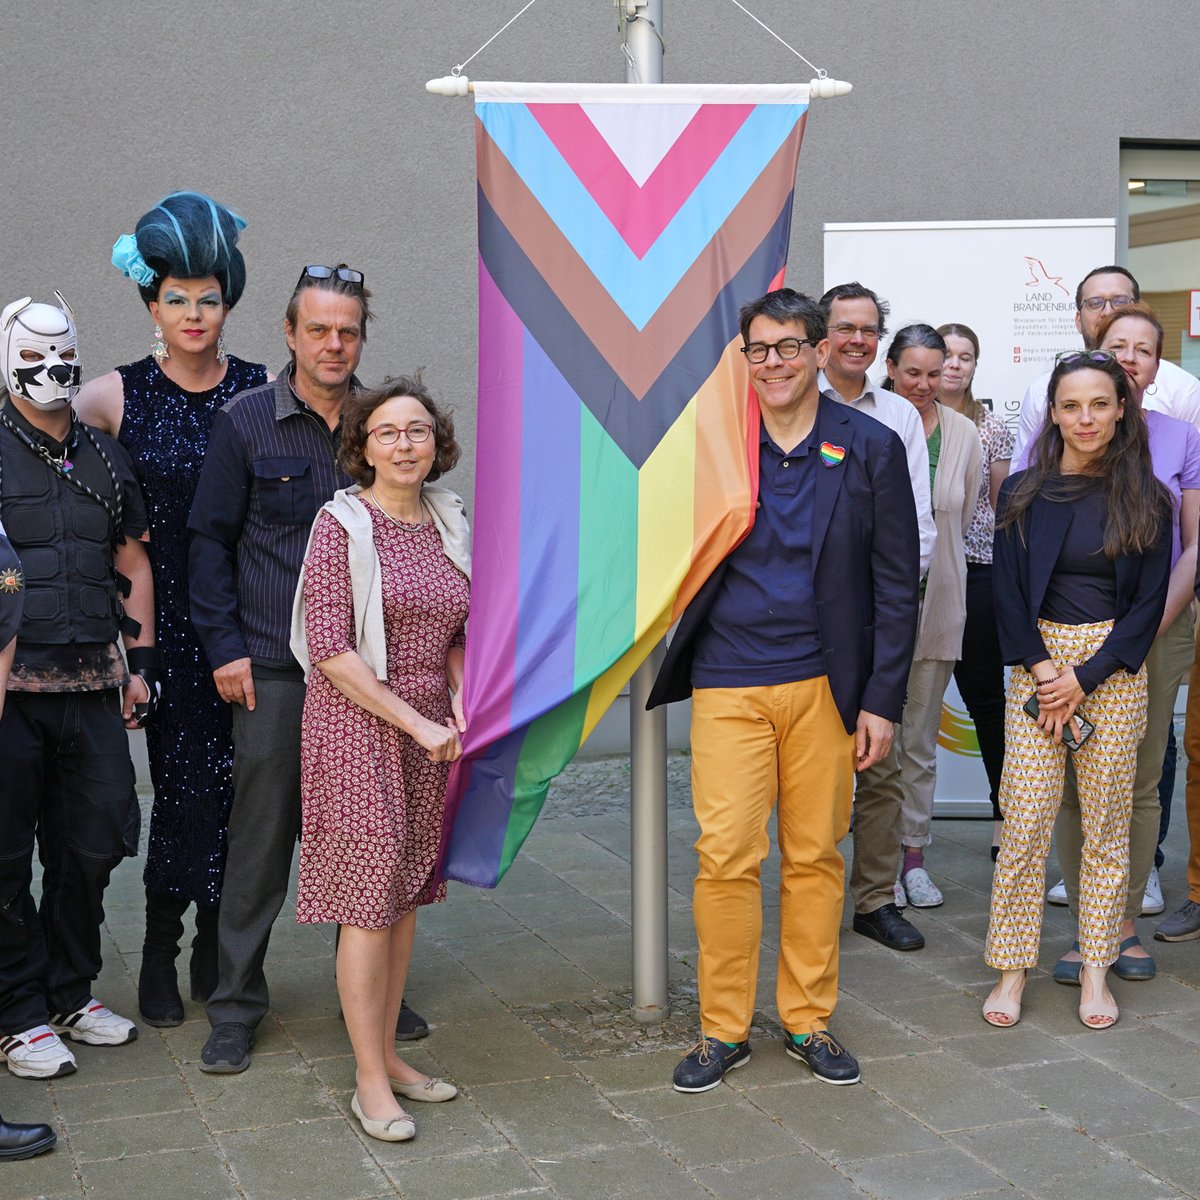 Flagge zeigen für Akzeptanz und Gleichberechtigung: Staatssekretär Thomas Götz und Landesgleichstellungsbeauftragte Manuela Dörnenburg haben heute die Regenbogenfahne vor unserem Ministerium gehisst. Zeichen gegen Diskriminierung und Ausgrenzung von LSBTIQ*-Personen #IDAHOBIT